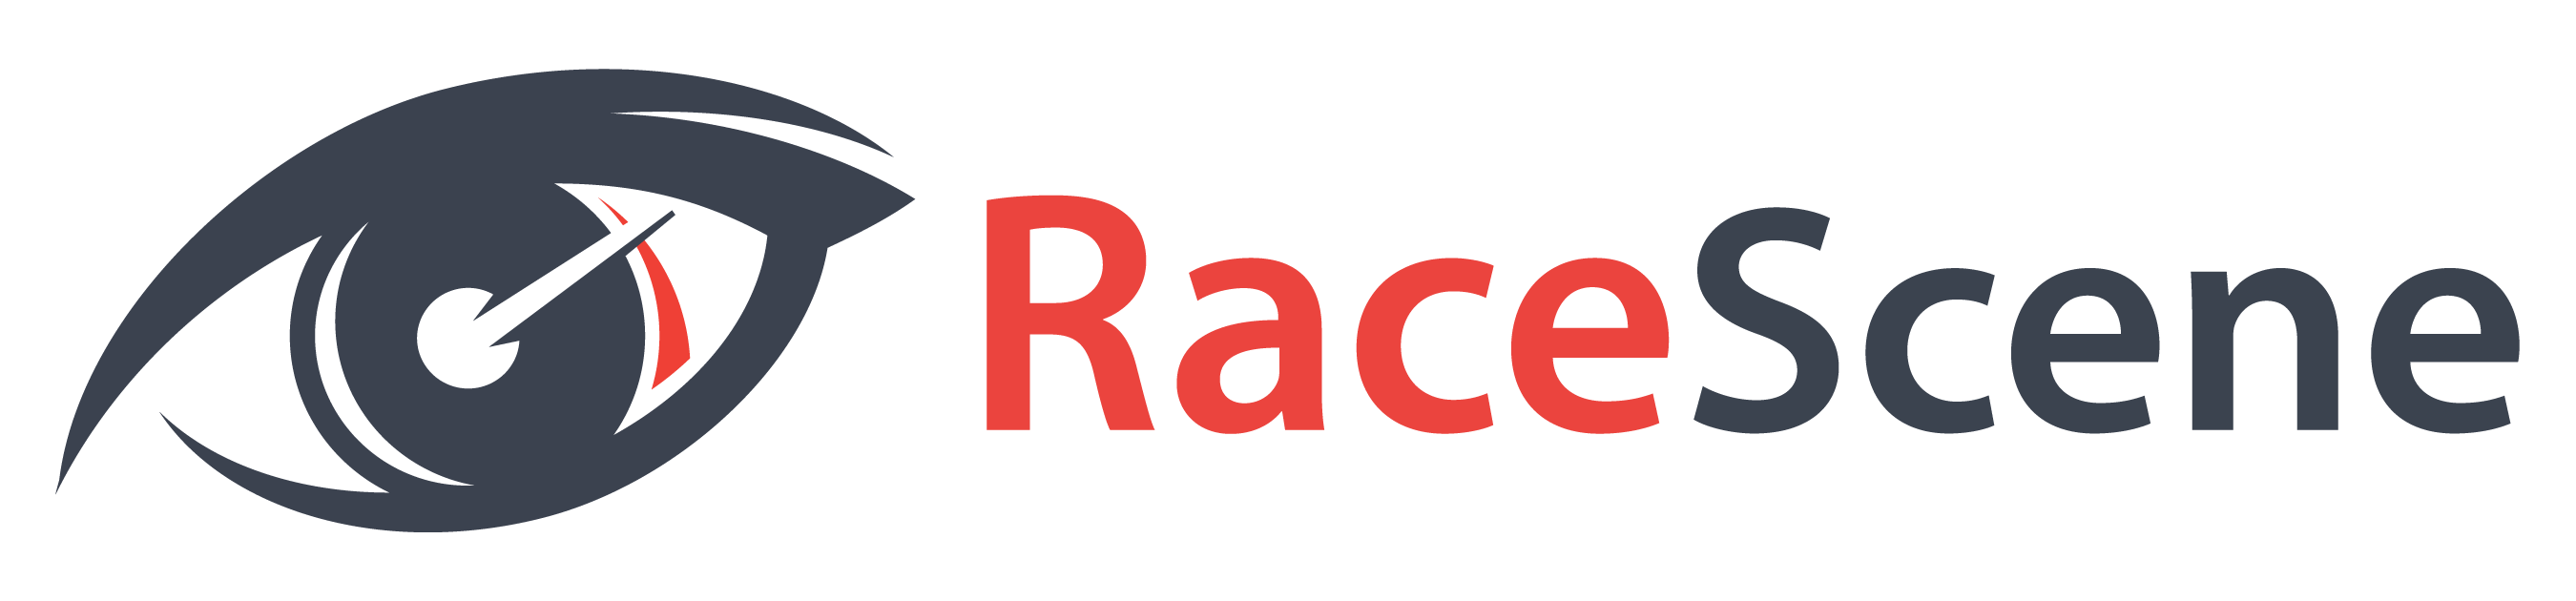 RaceScene.com